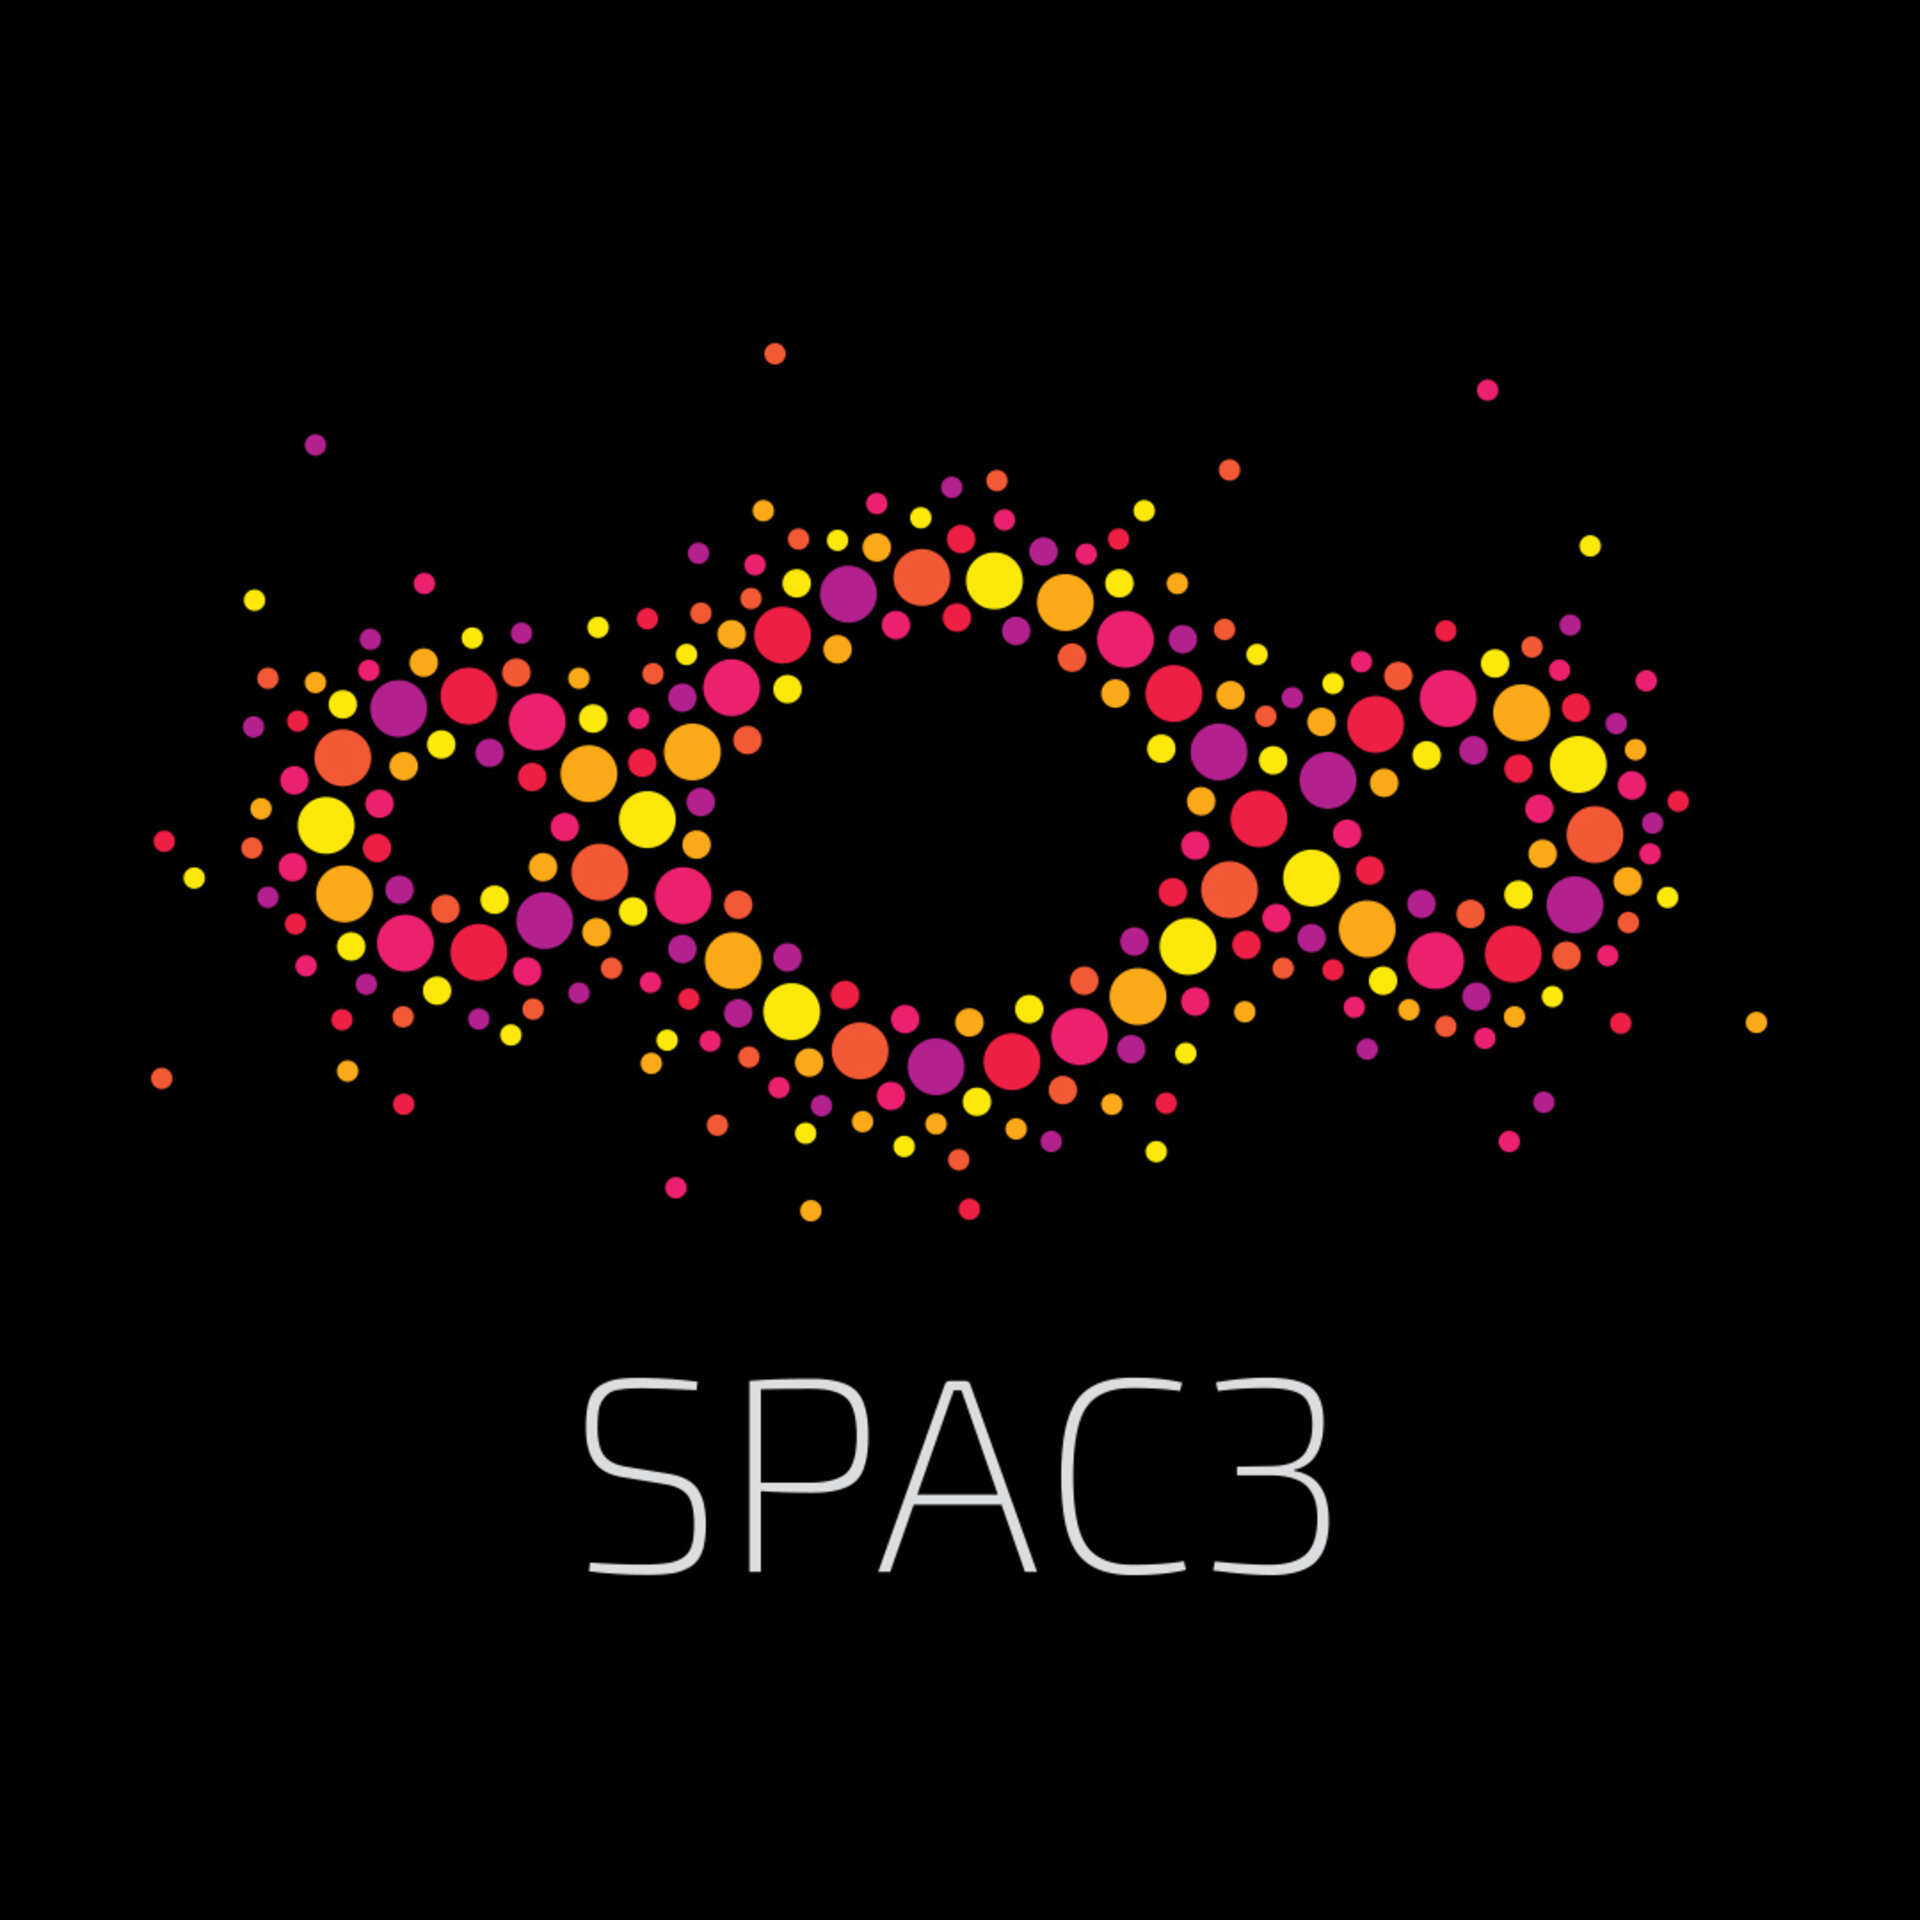 Spac3 symbol